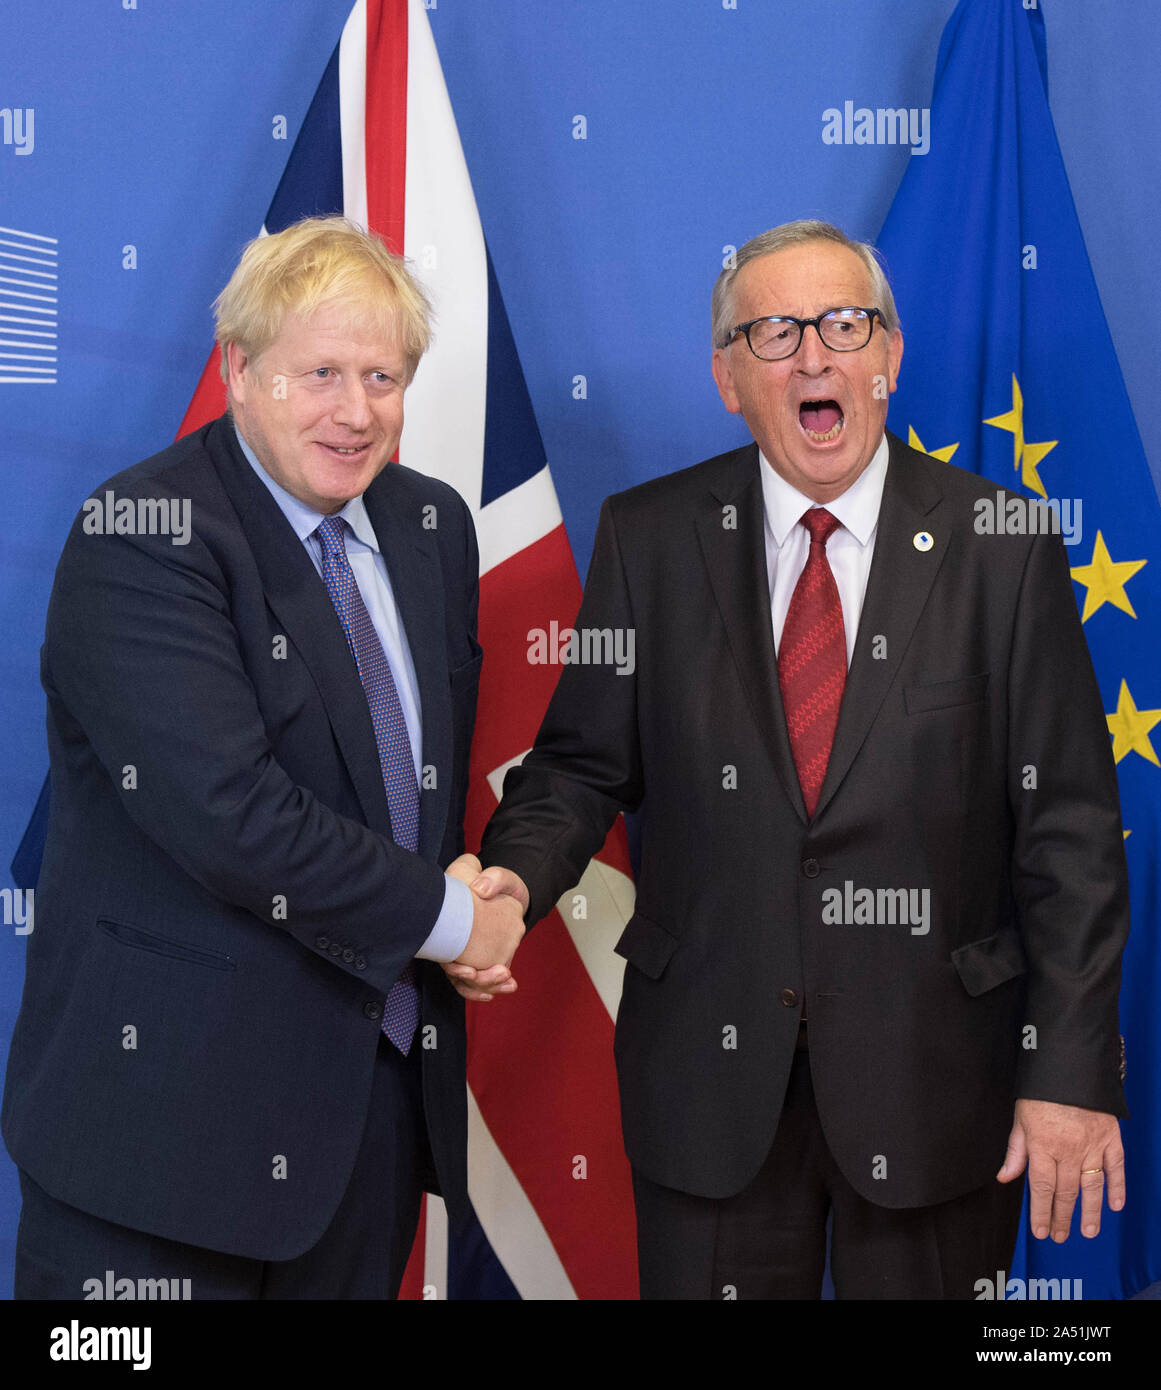 Der britische Premierminister Boris Johnson (links) und Jean-Claude Juncker, der Präsident der Europäischen Kommission, Vor dem Öffnen von Sitzungen des Europäischen Rates zu EU-Zentrale in Brüssel. Stockfoto